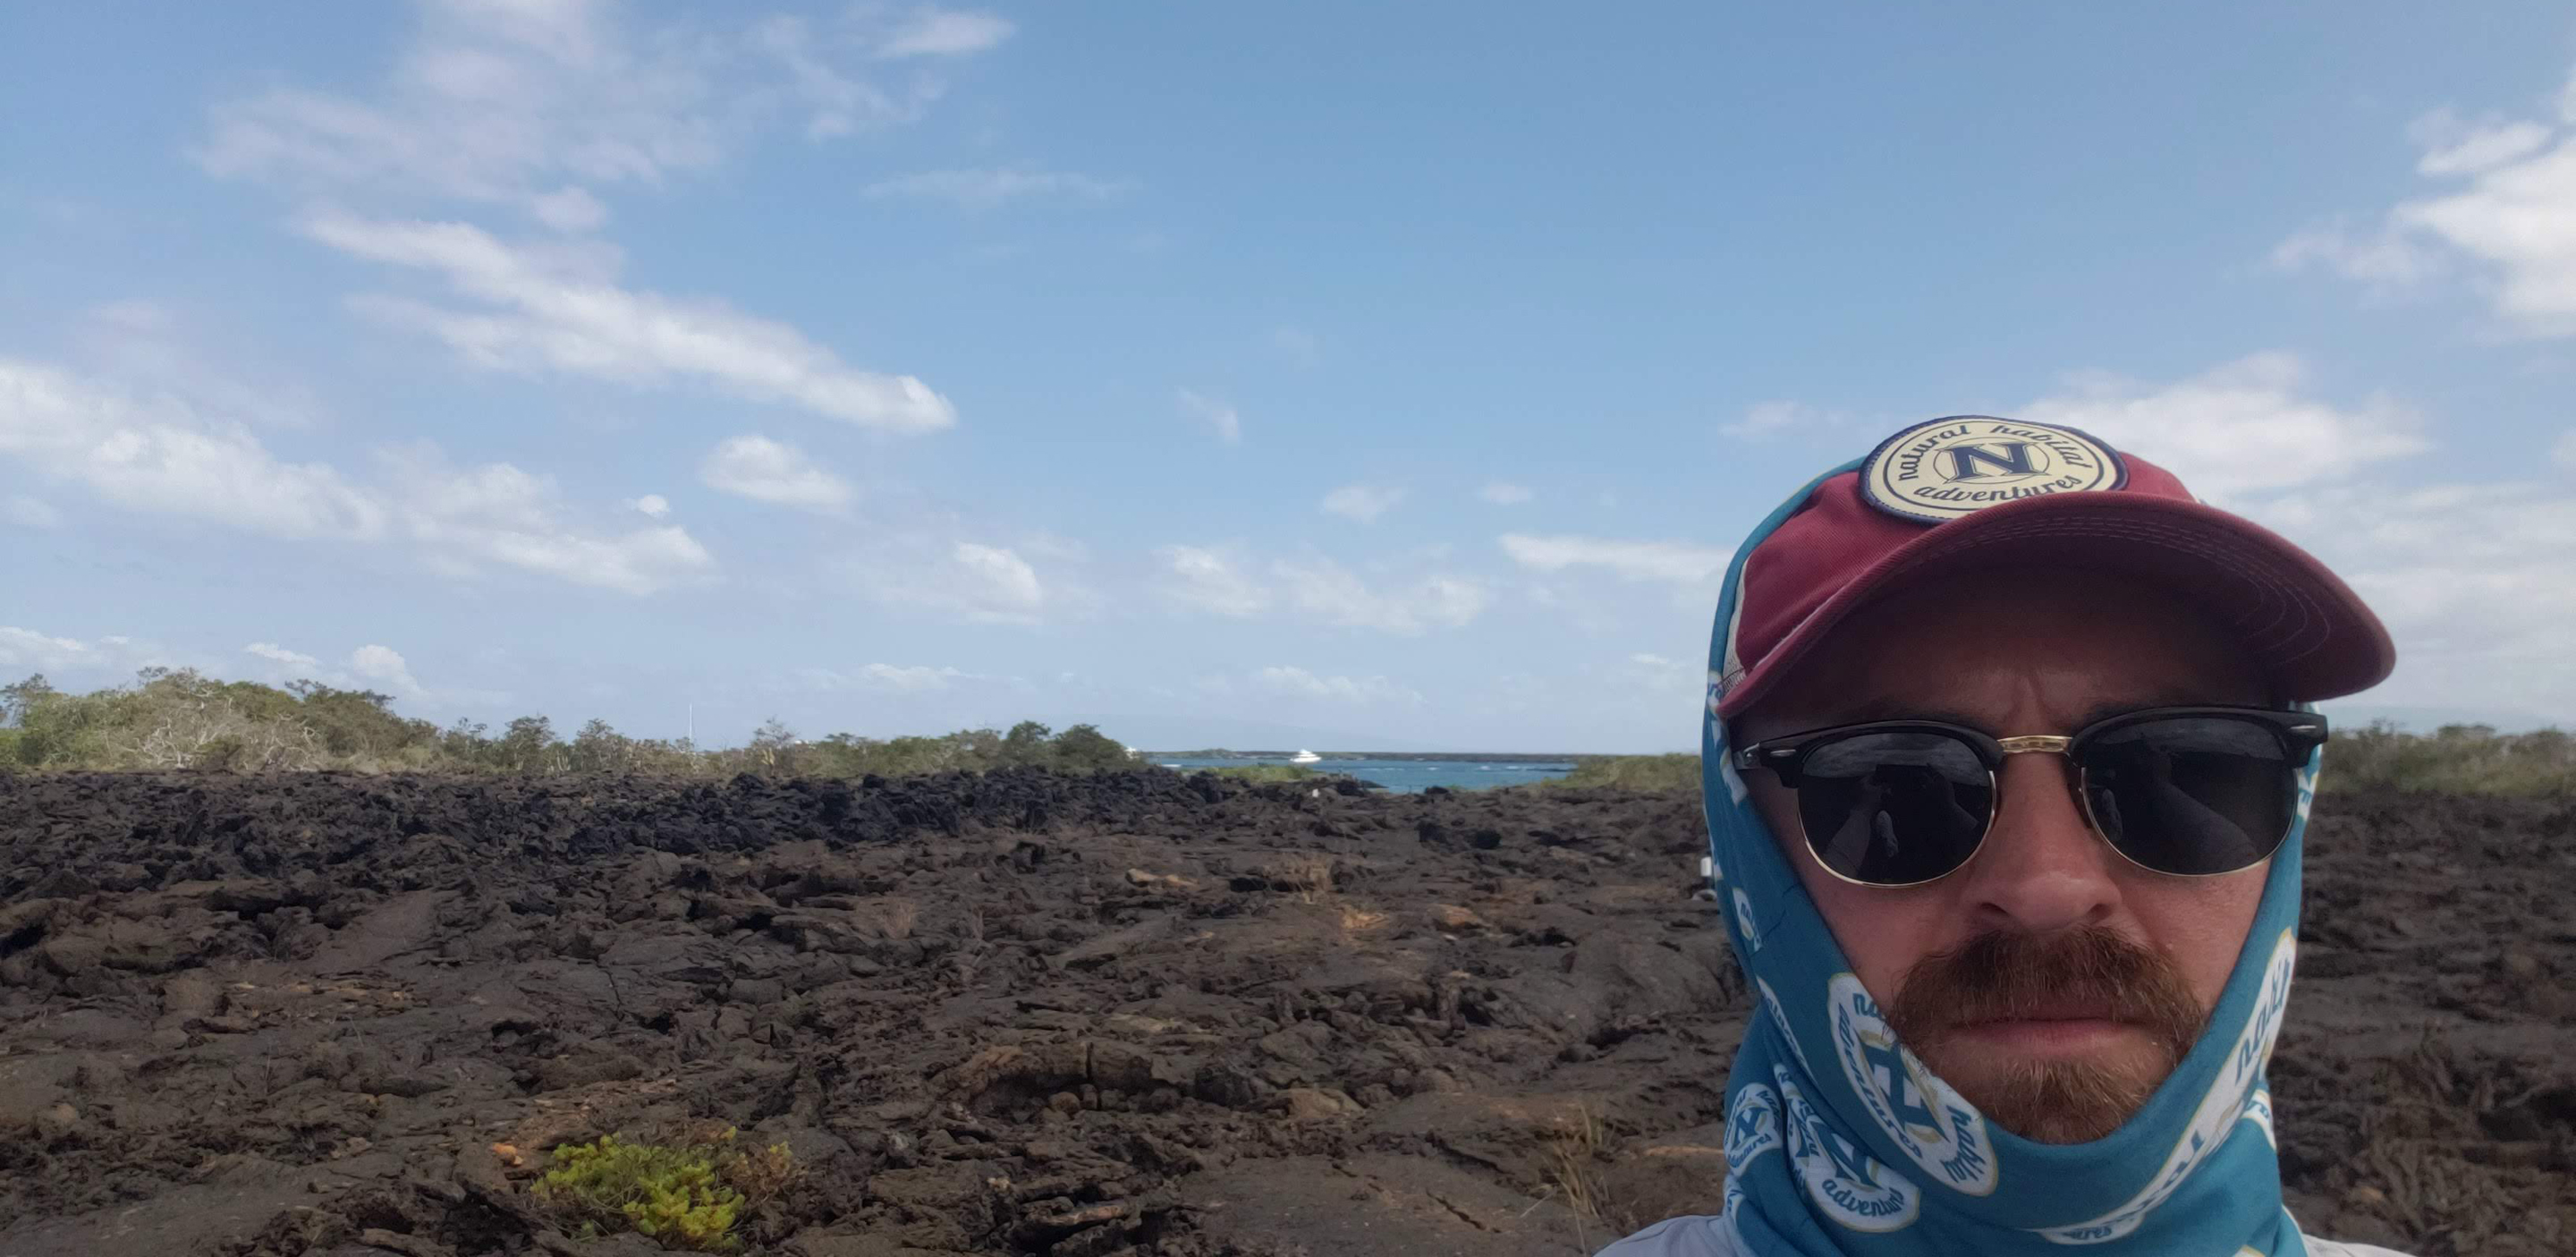 Selfie on the volcanic rocks of Punta Moreno on Isabela (Galapagos).